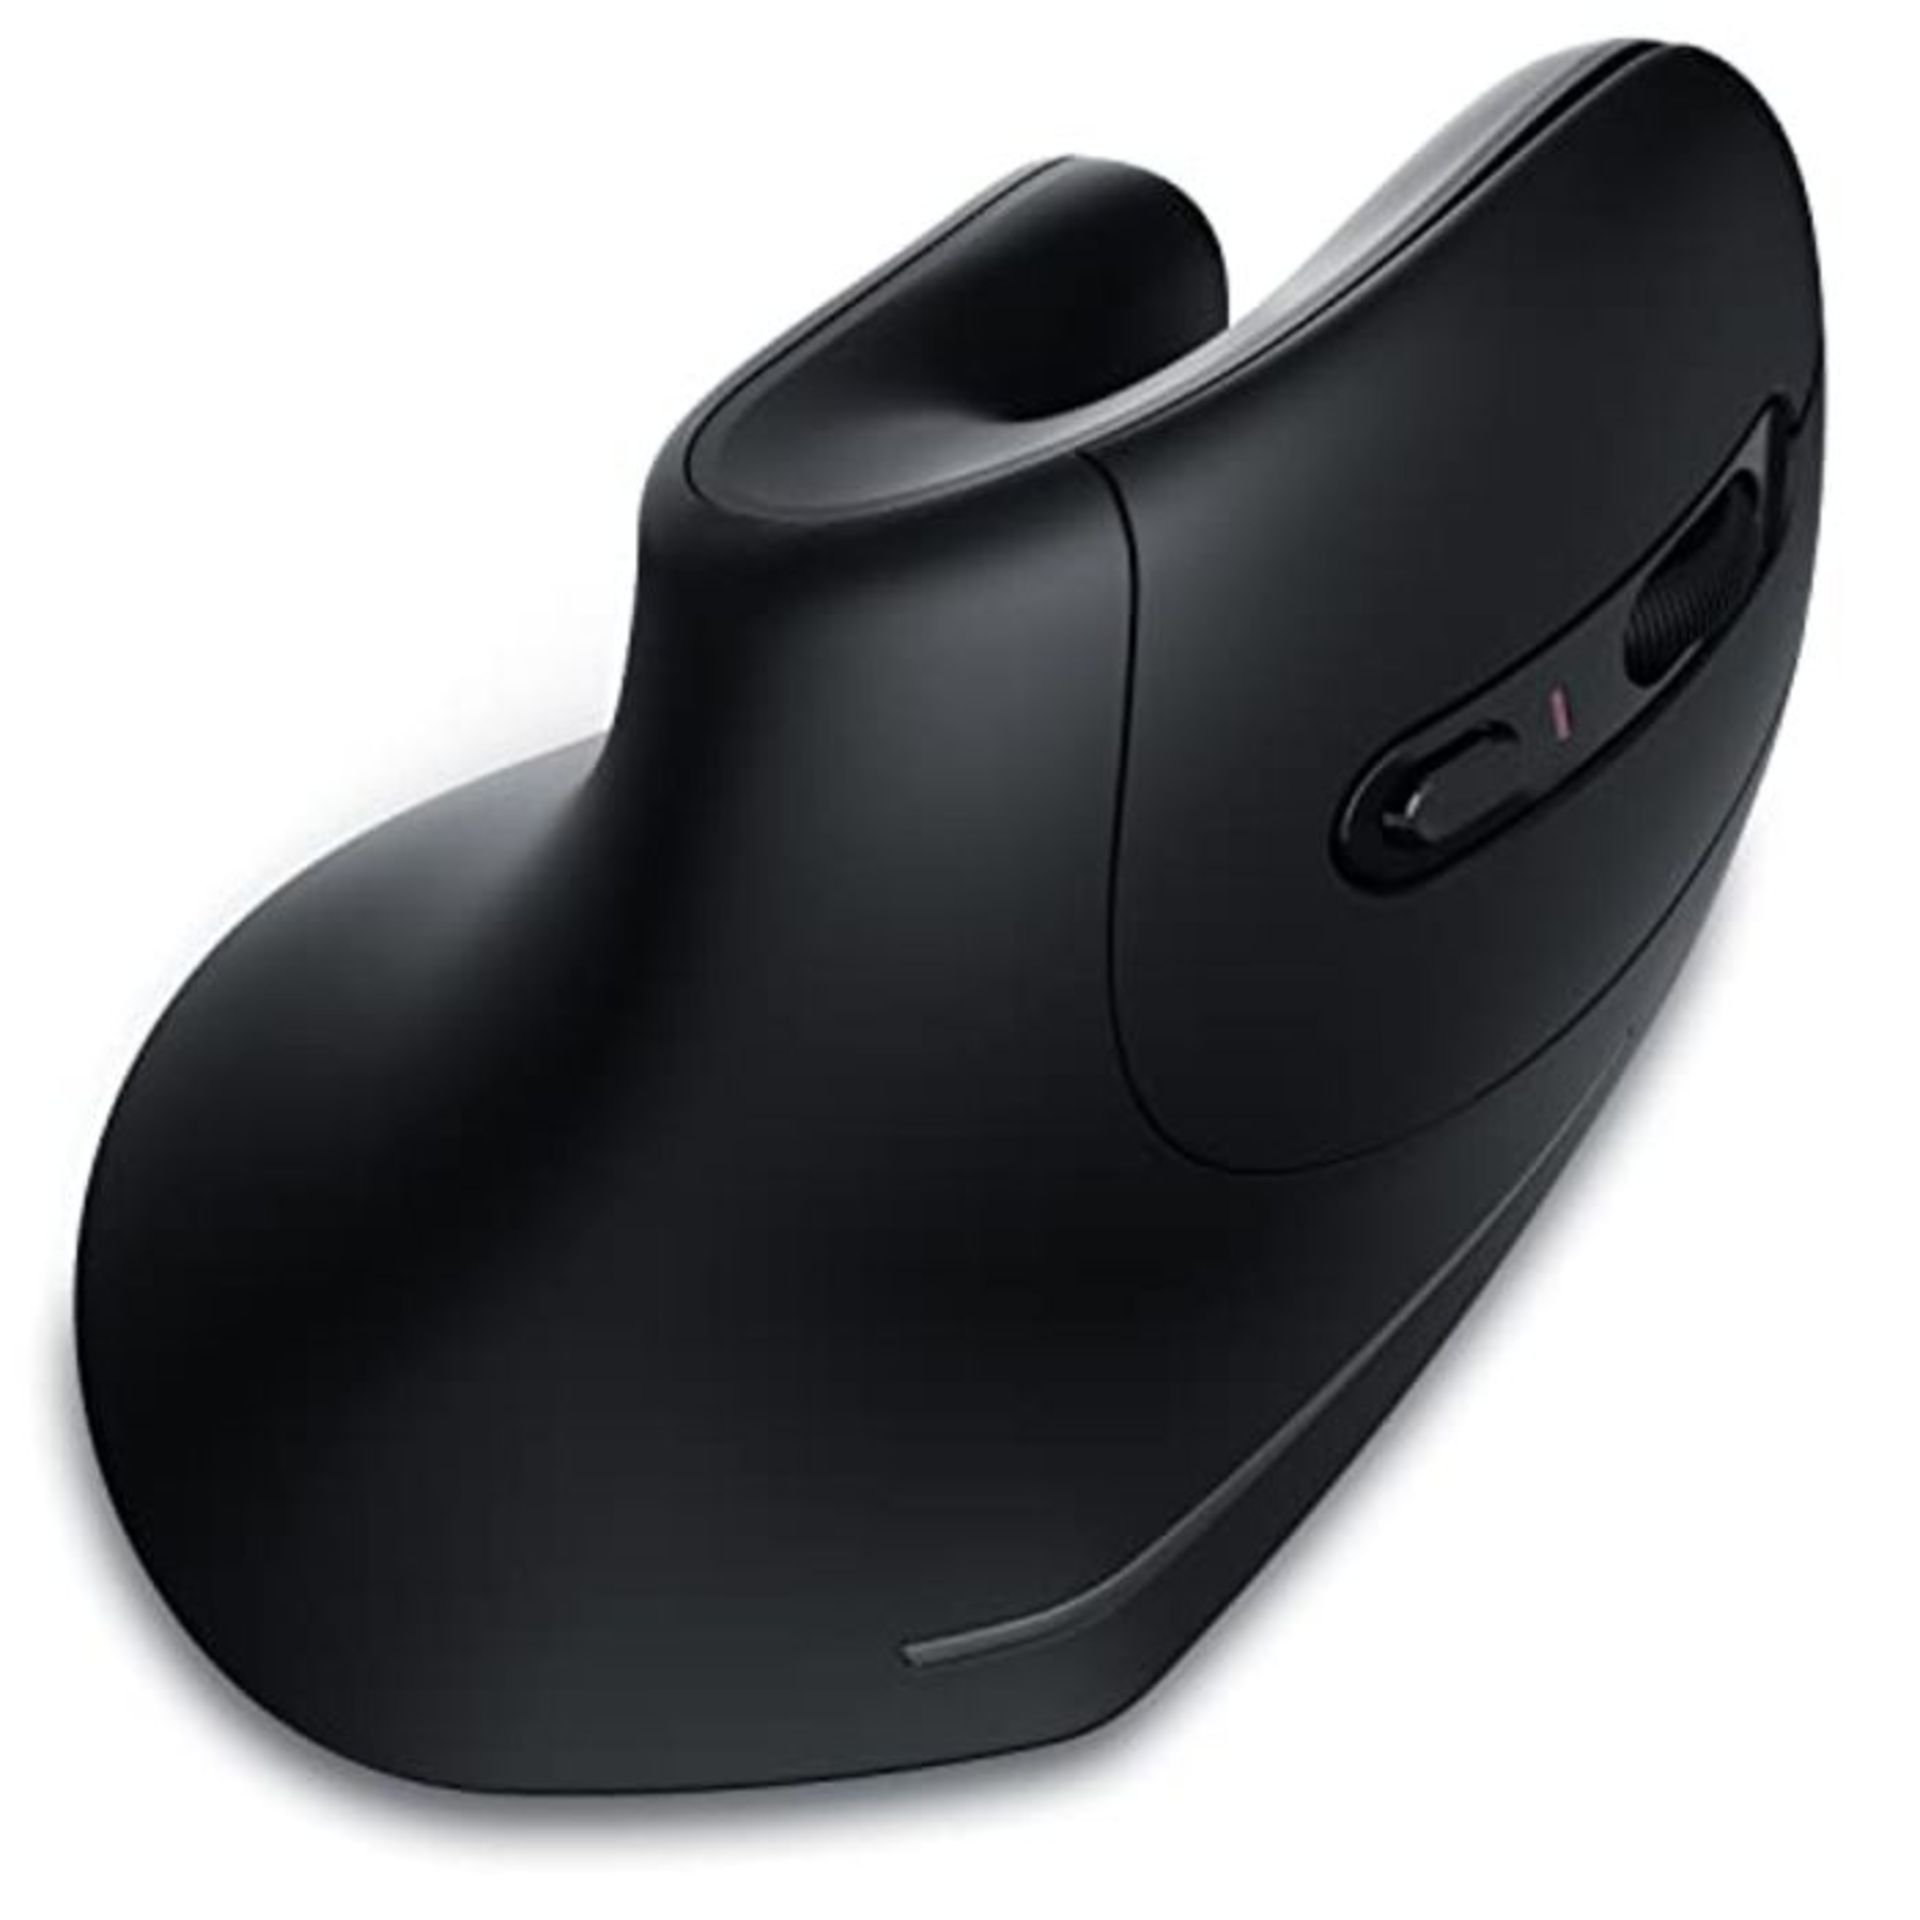 CSL - kabellose Vertikal Maus - Bluetooth + 2,4 Ghz Funkmaus - Wireless Vertical Mouse